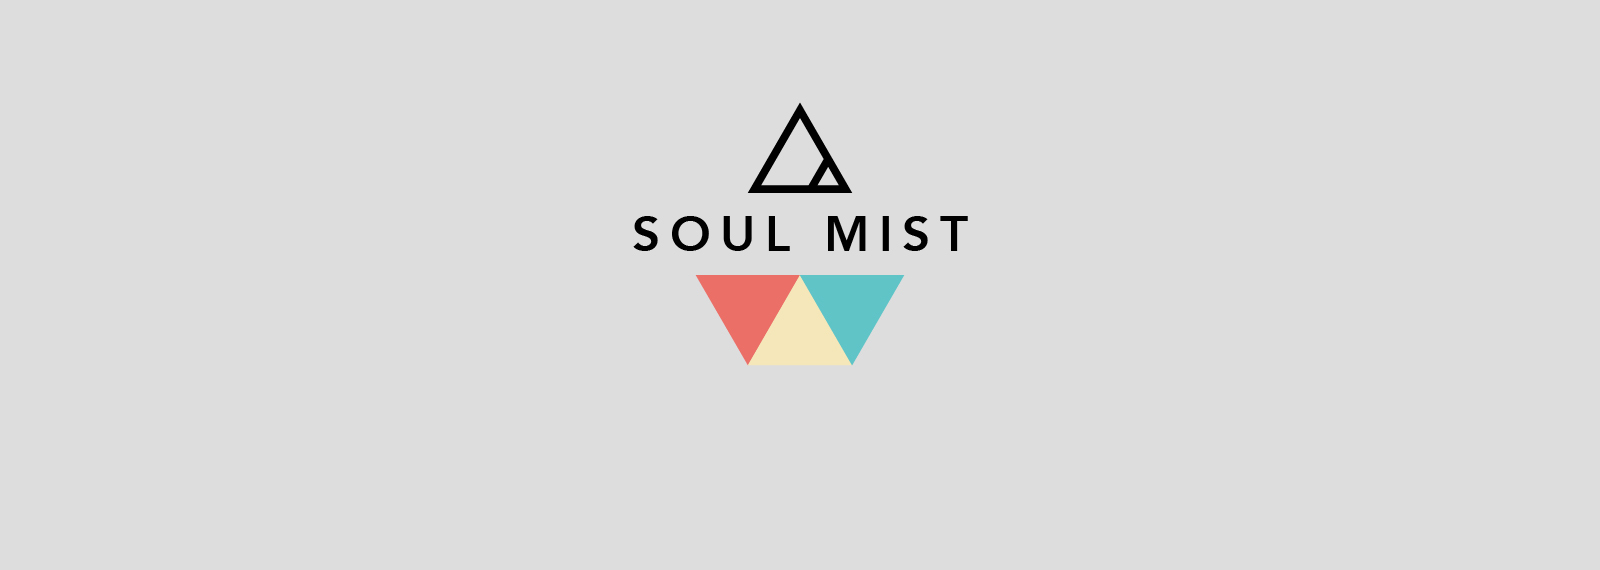 Soul Mist